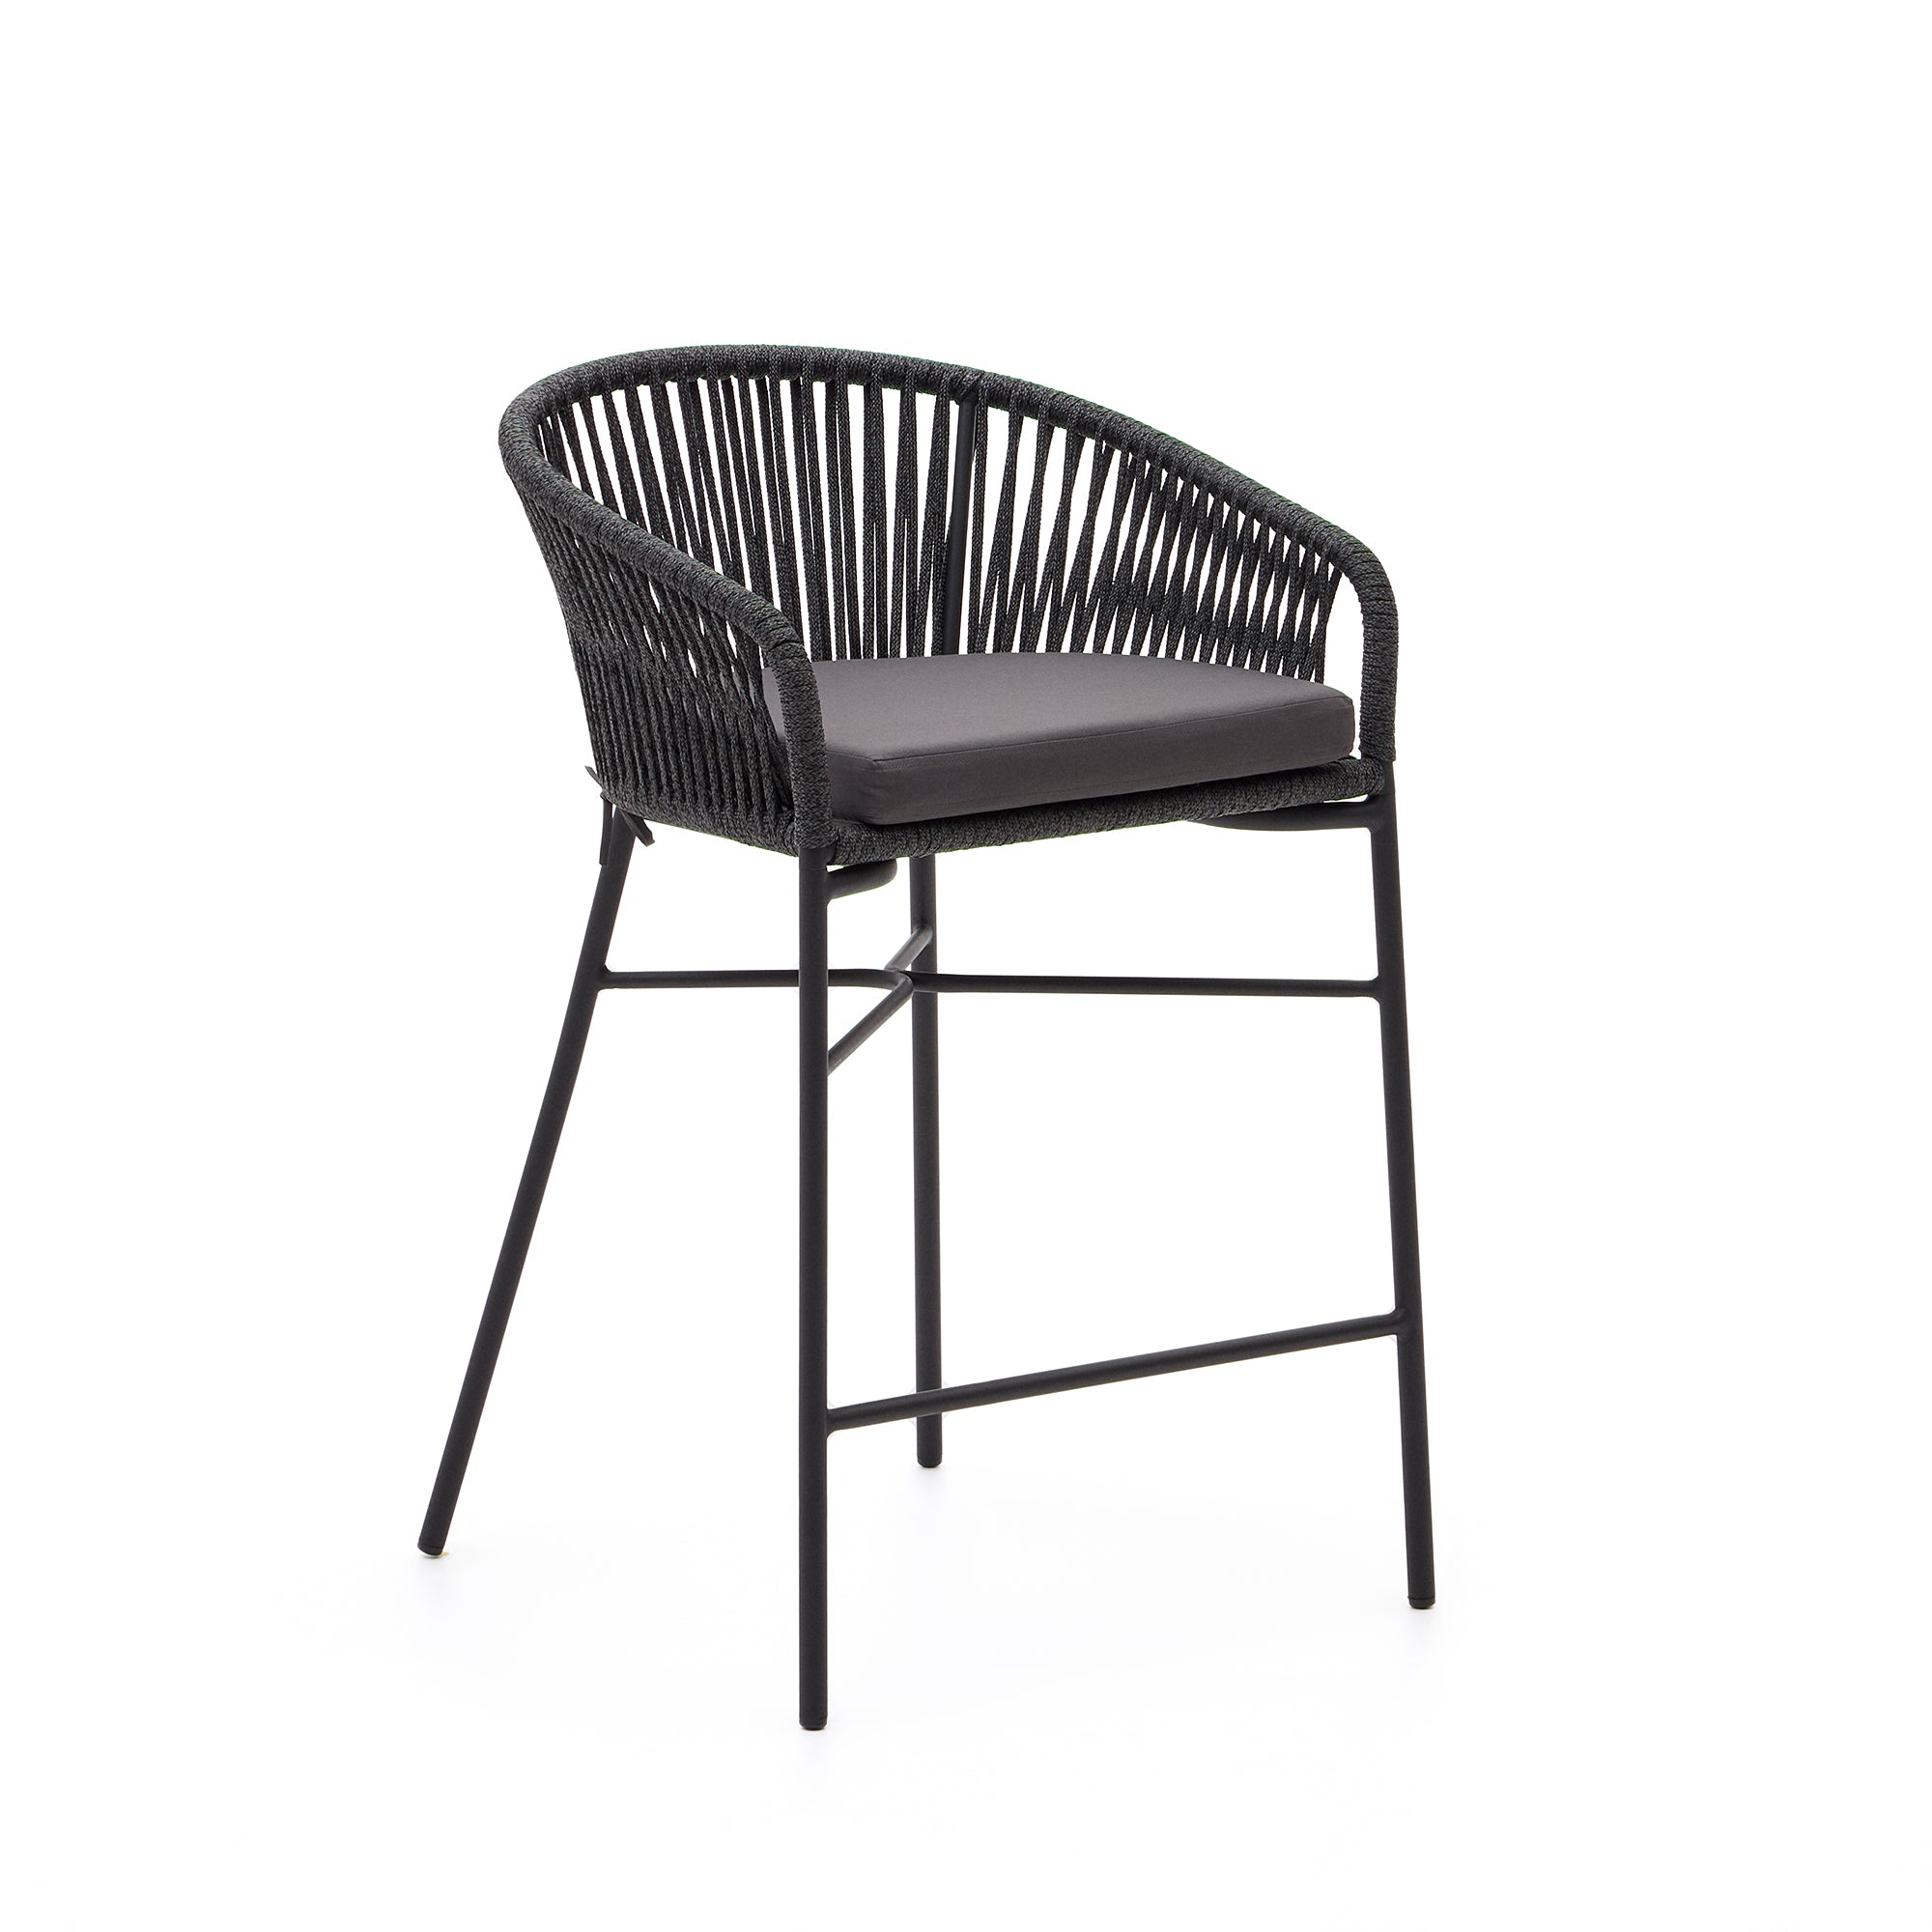 Yanet rope stool in black 65 cm in height